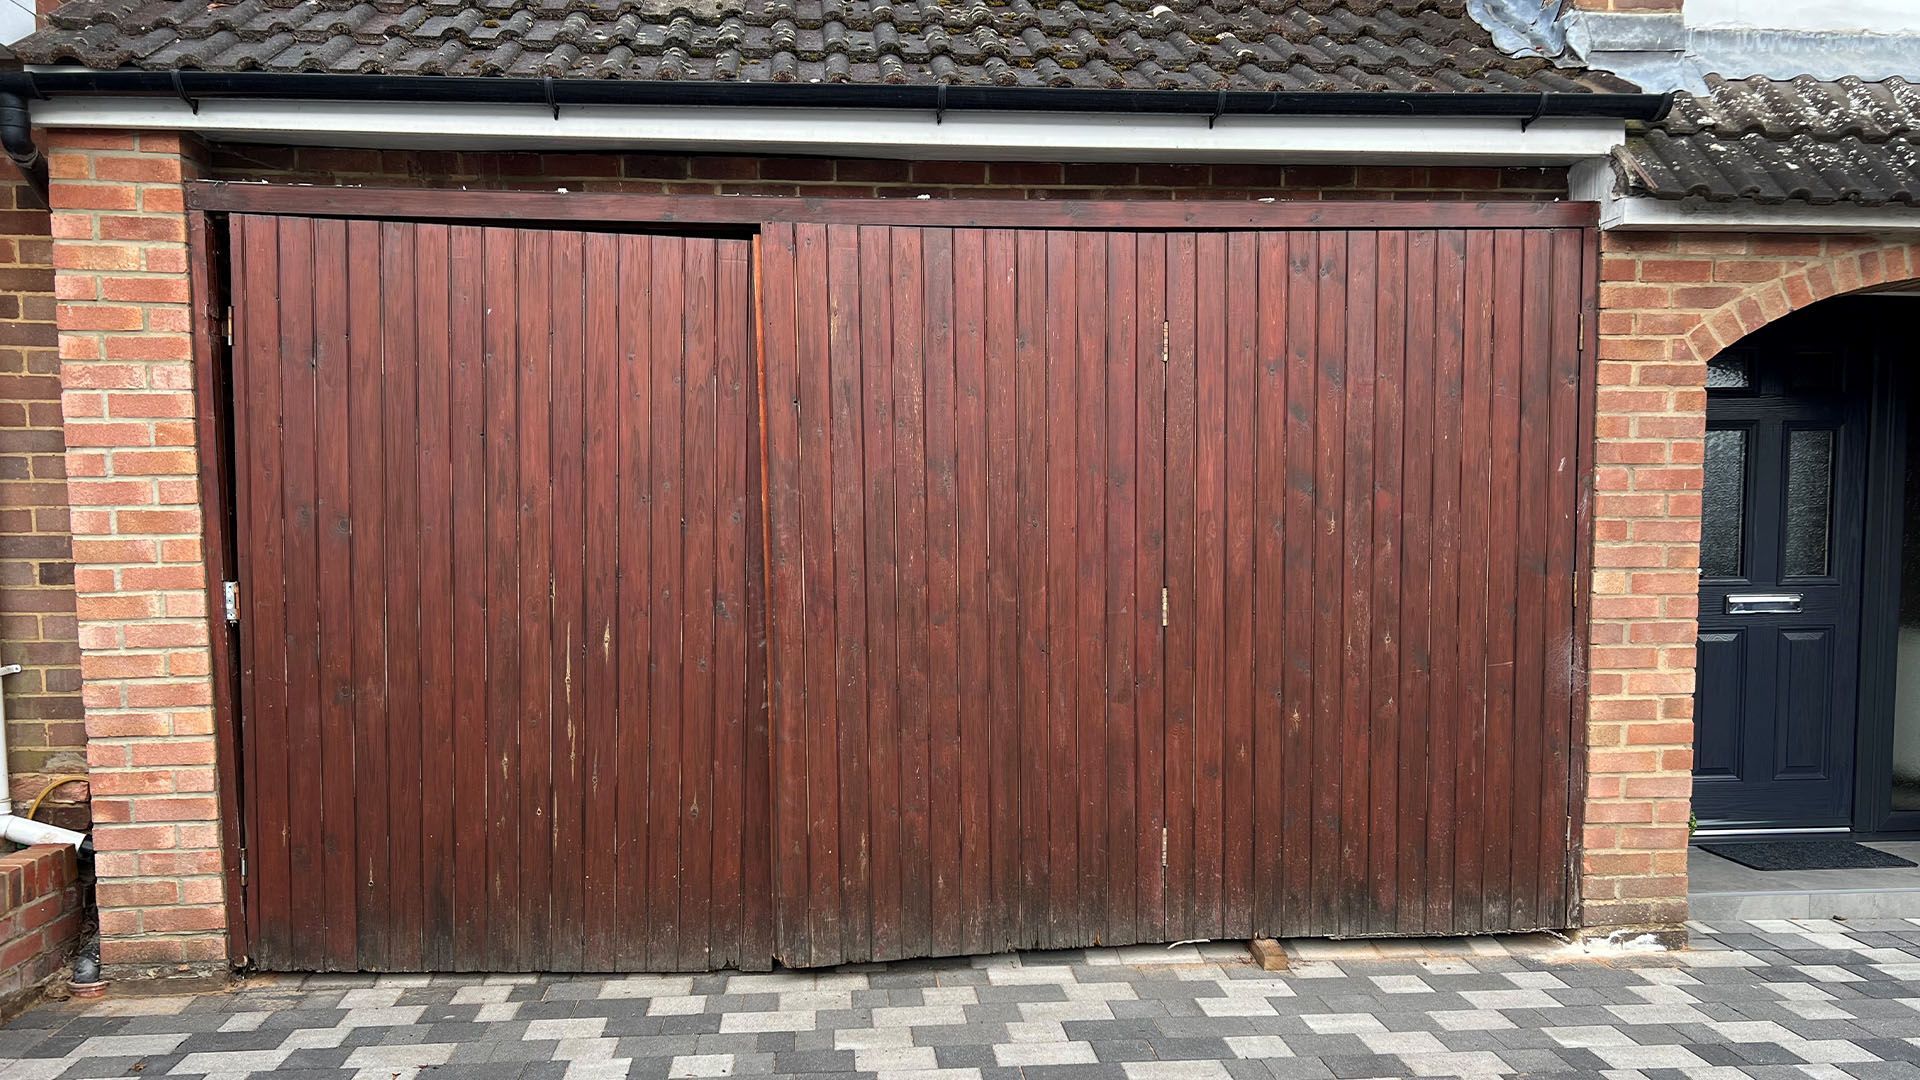 Broken wooden garage doors in need of replacement